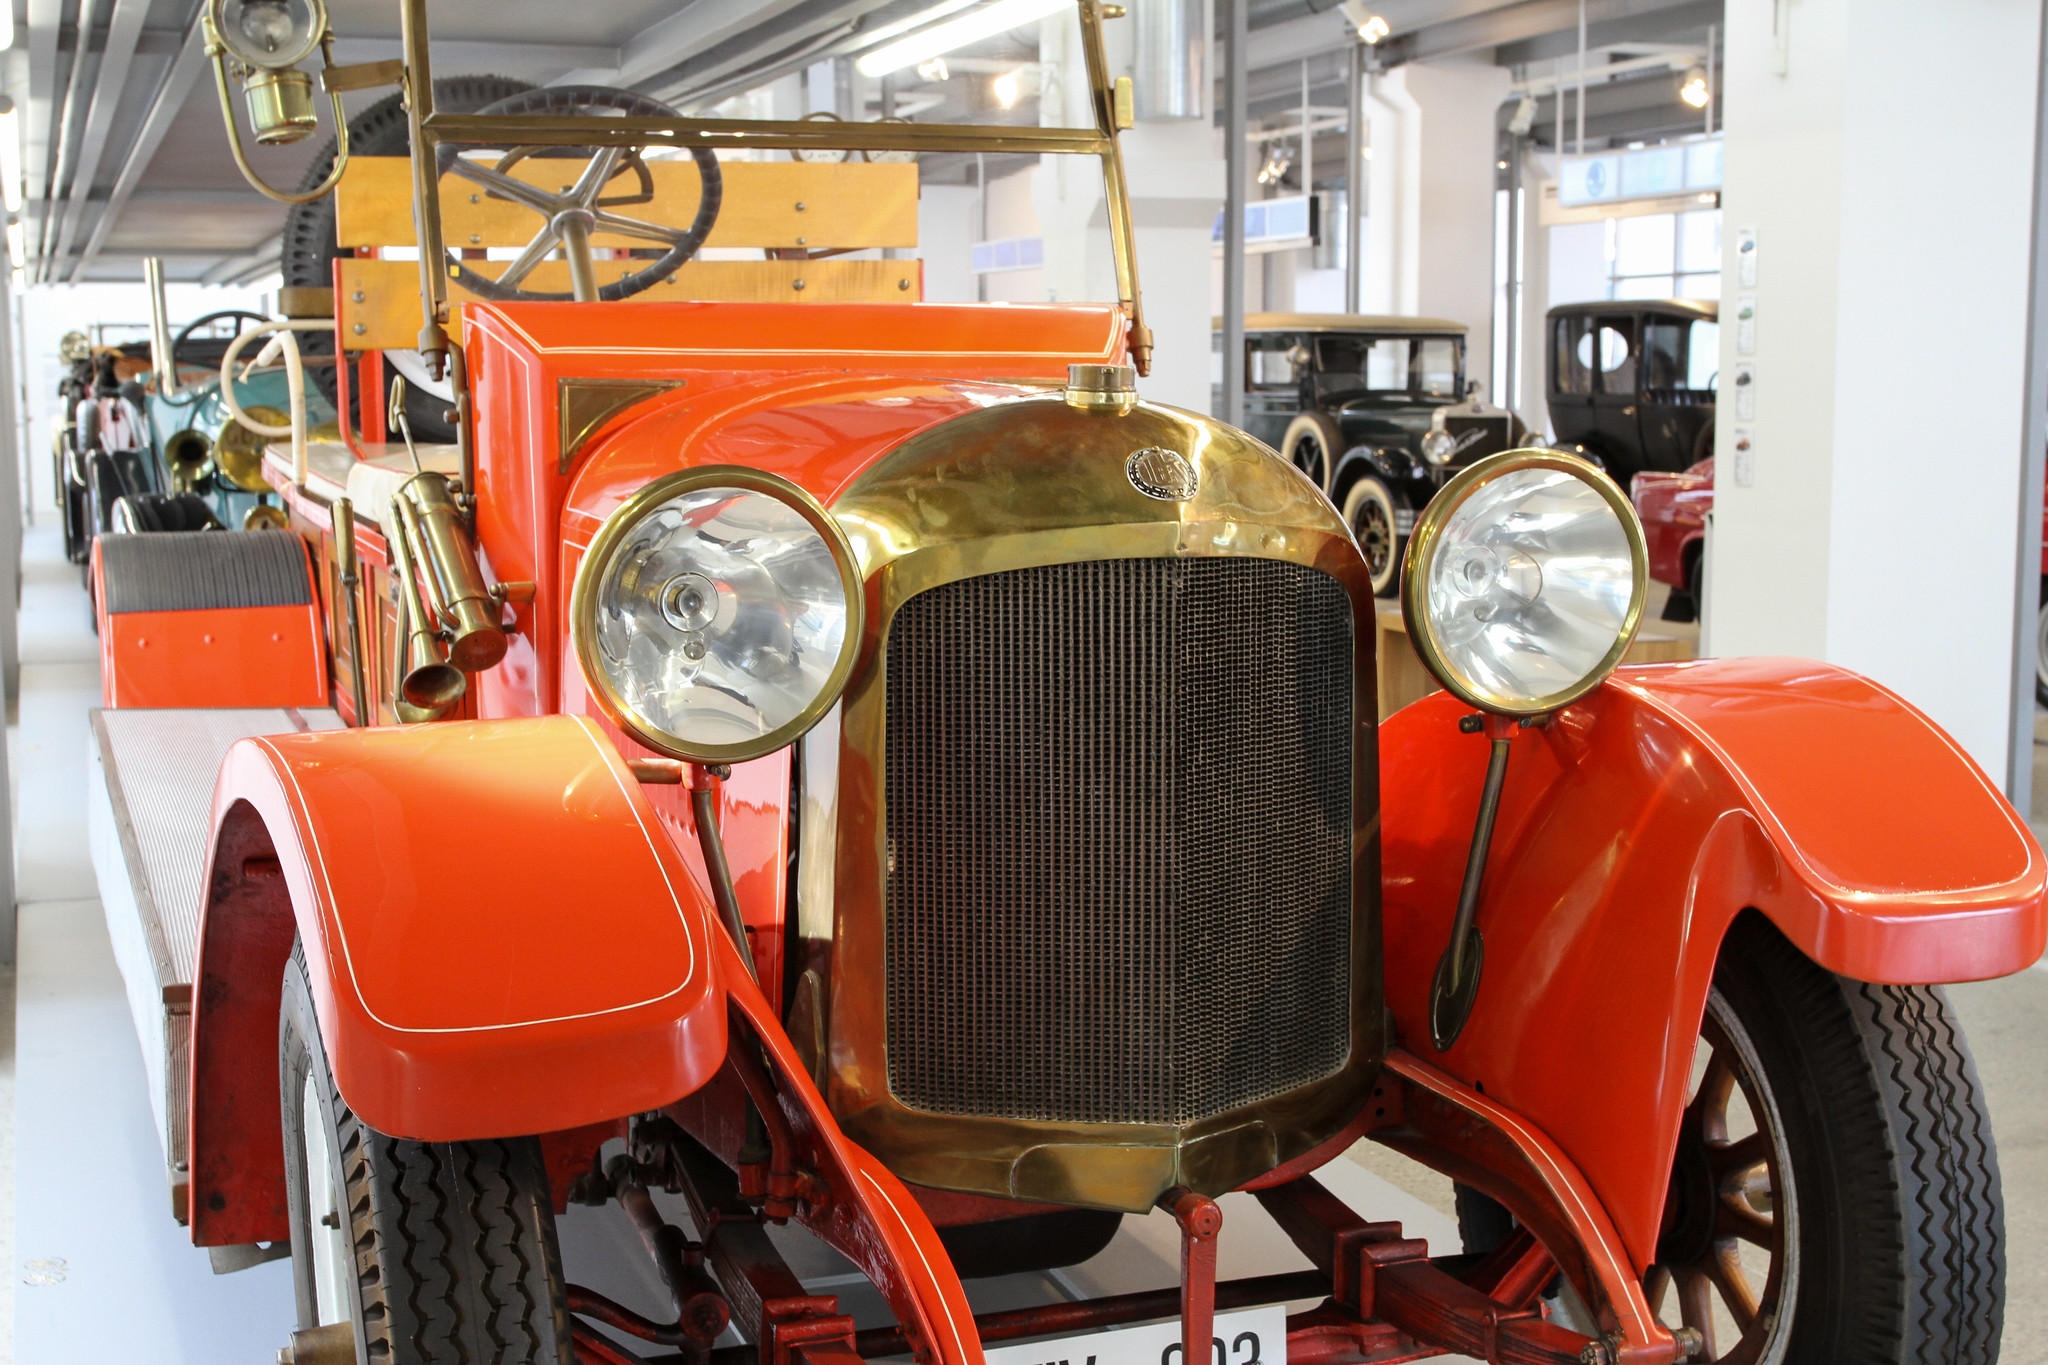 4-Zylinder-Motor, 4713 qcm, 50 PS, 4+R Getriebe, 90 km/h, Bauzeit 1917 bis 1923.